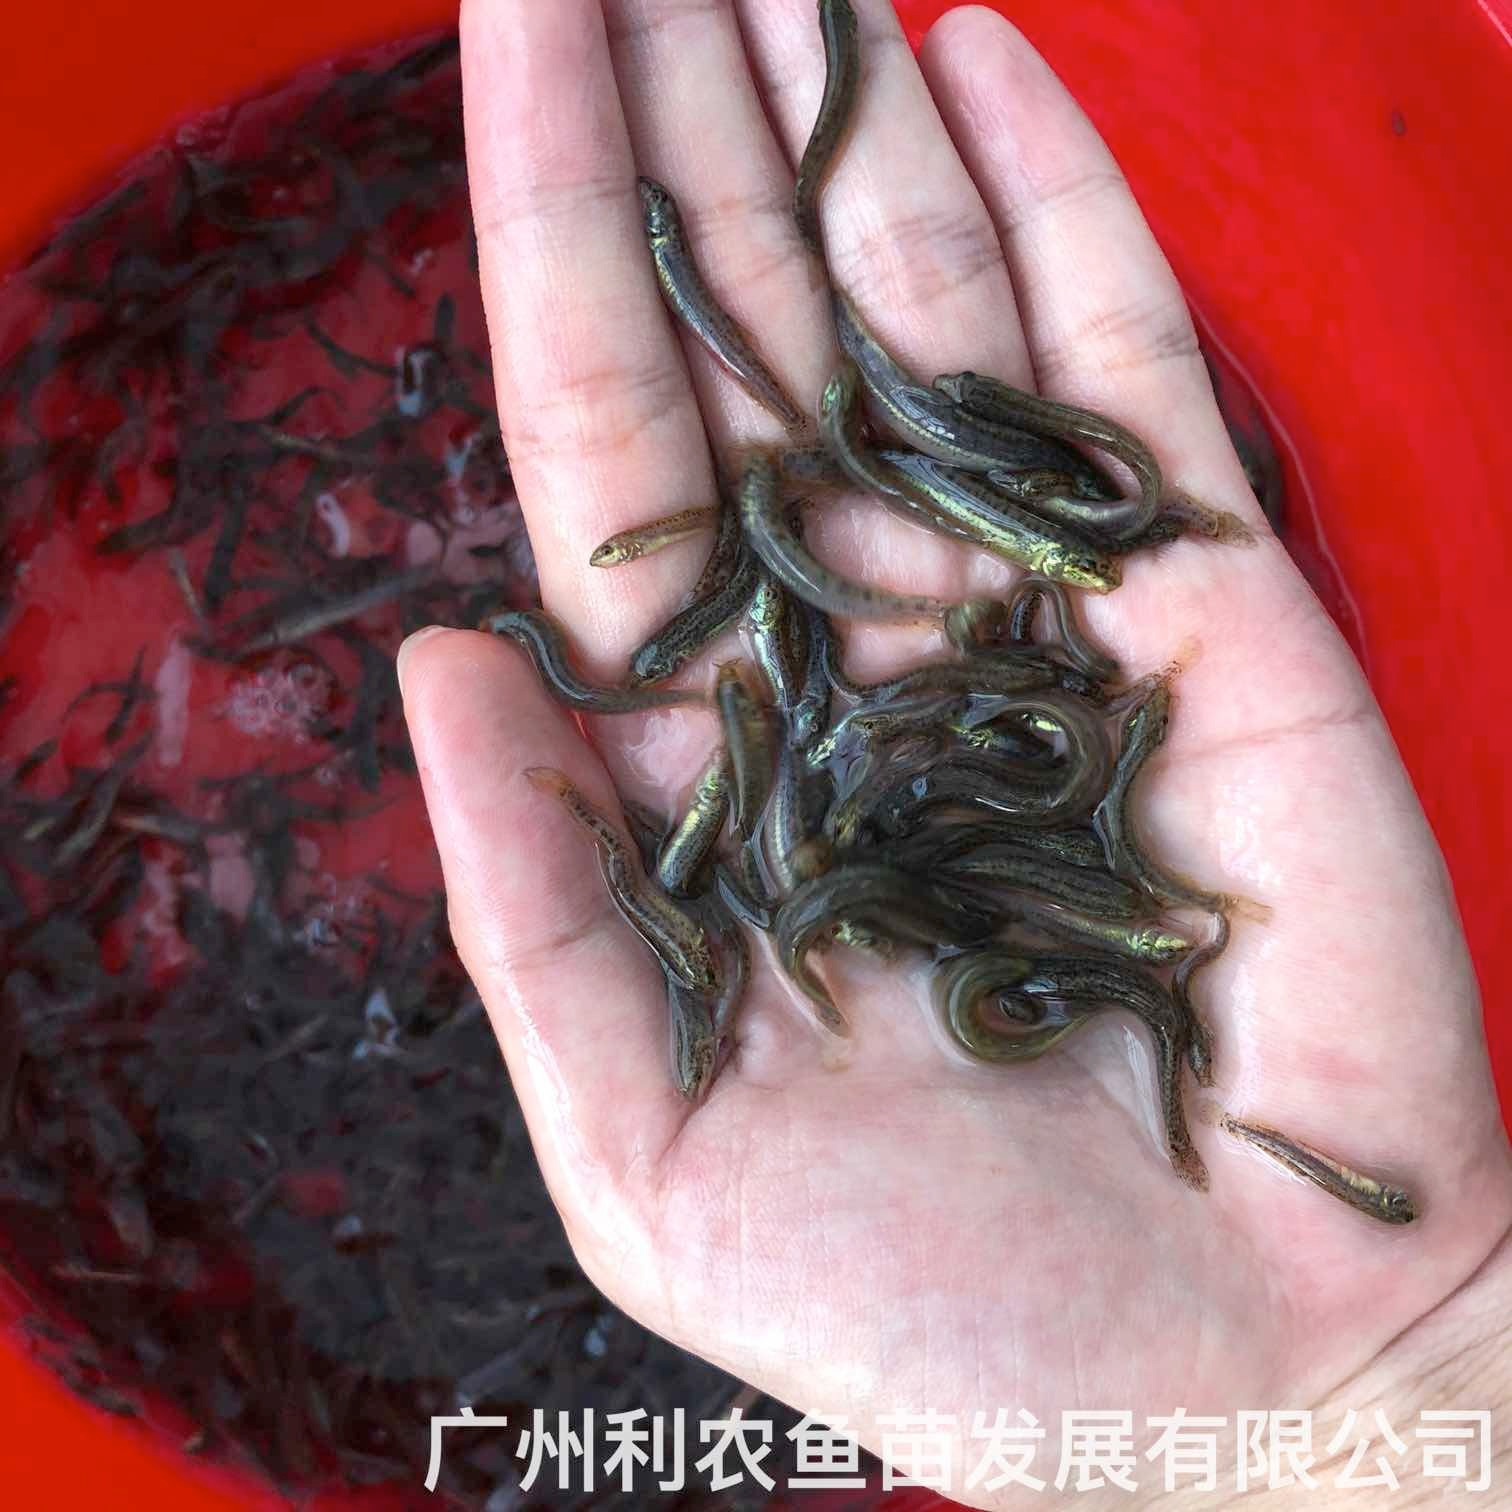 普宁台湾泥鳅苗出售肇庆泥鳅鱼苗批发